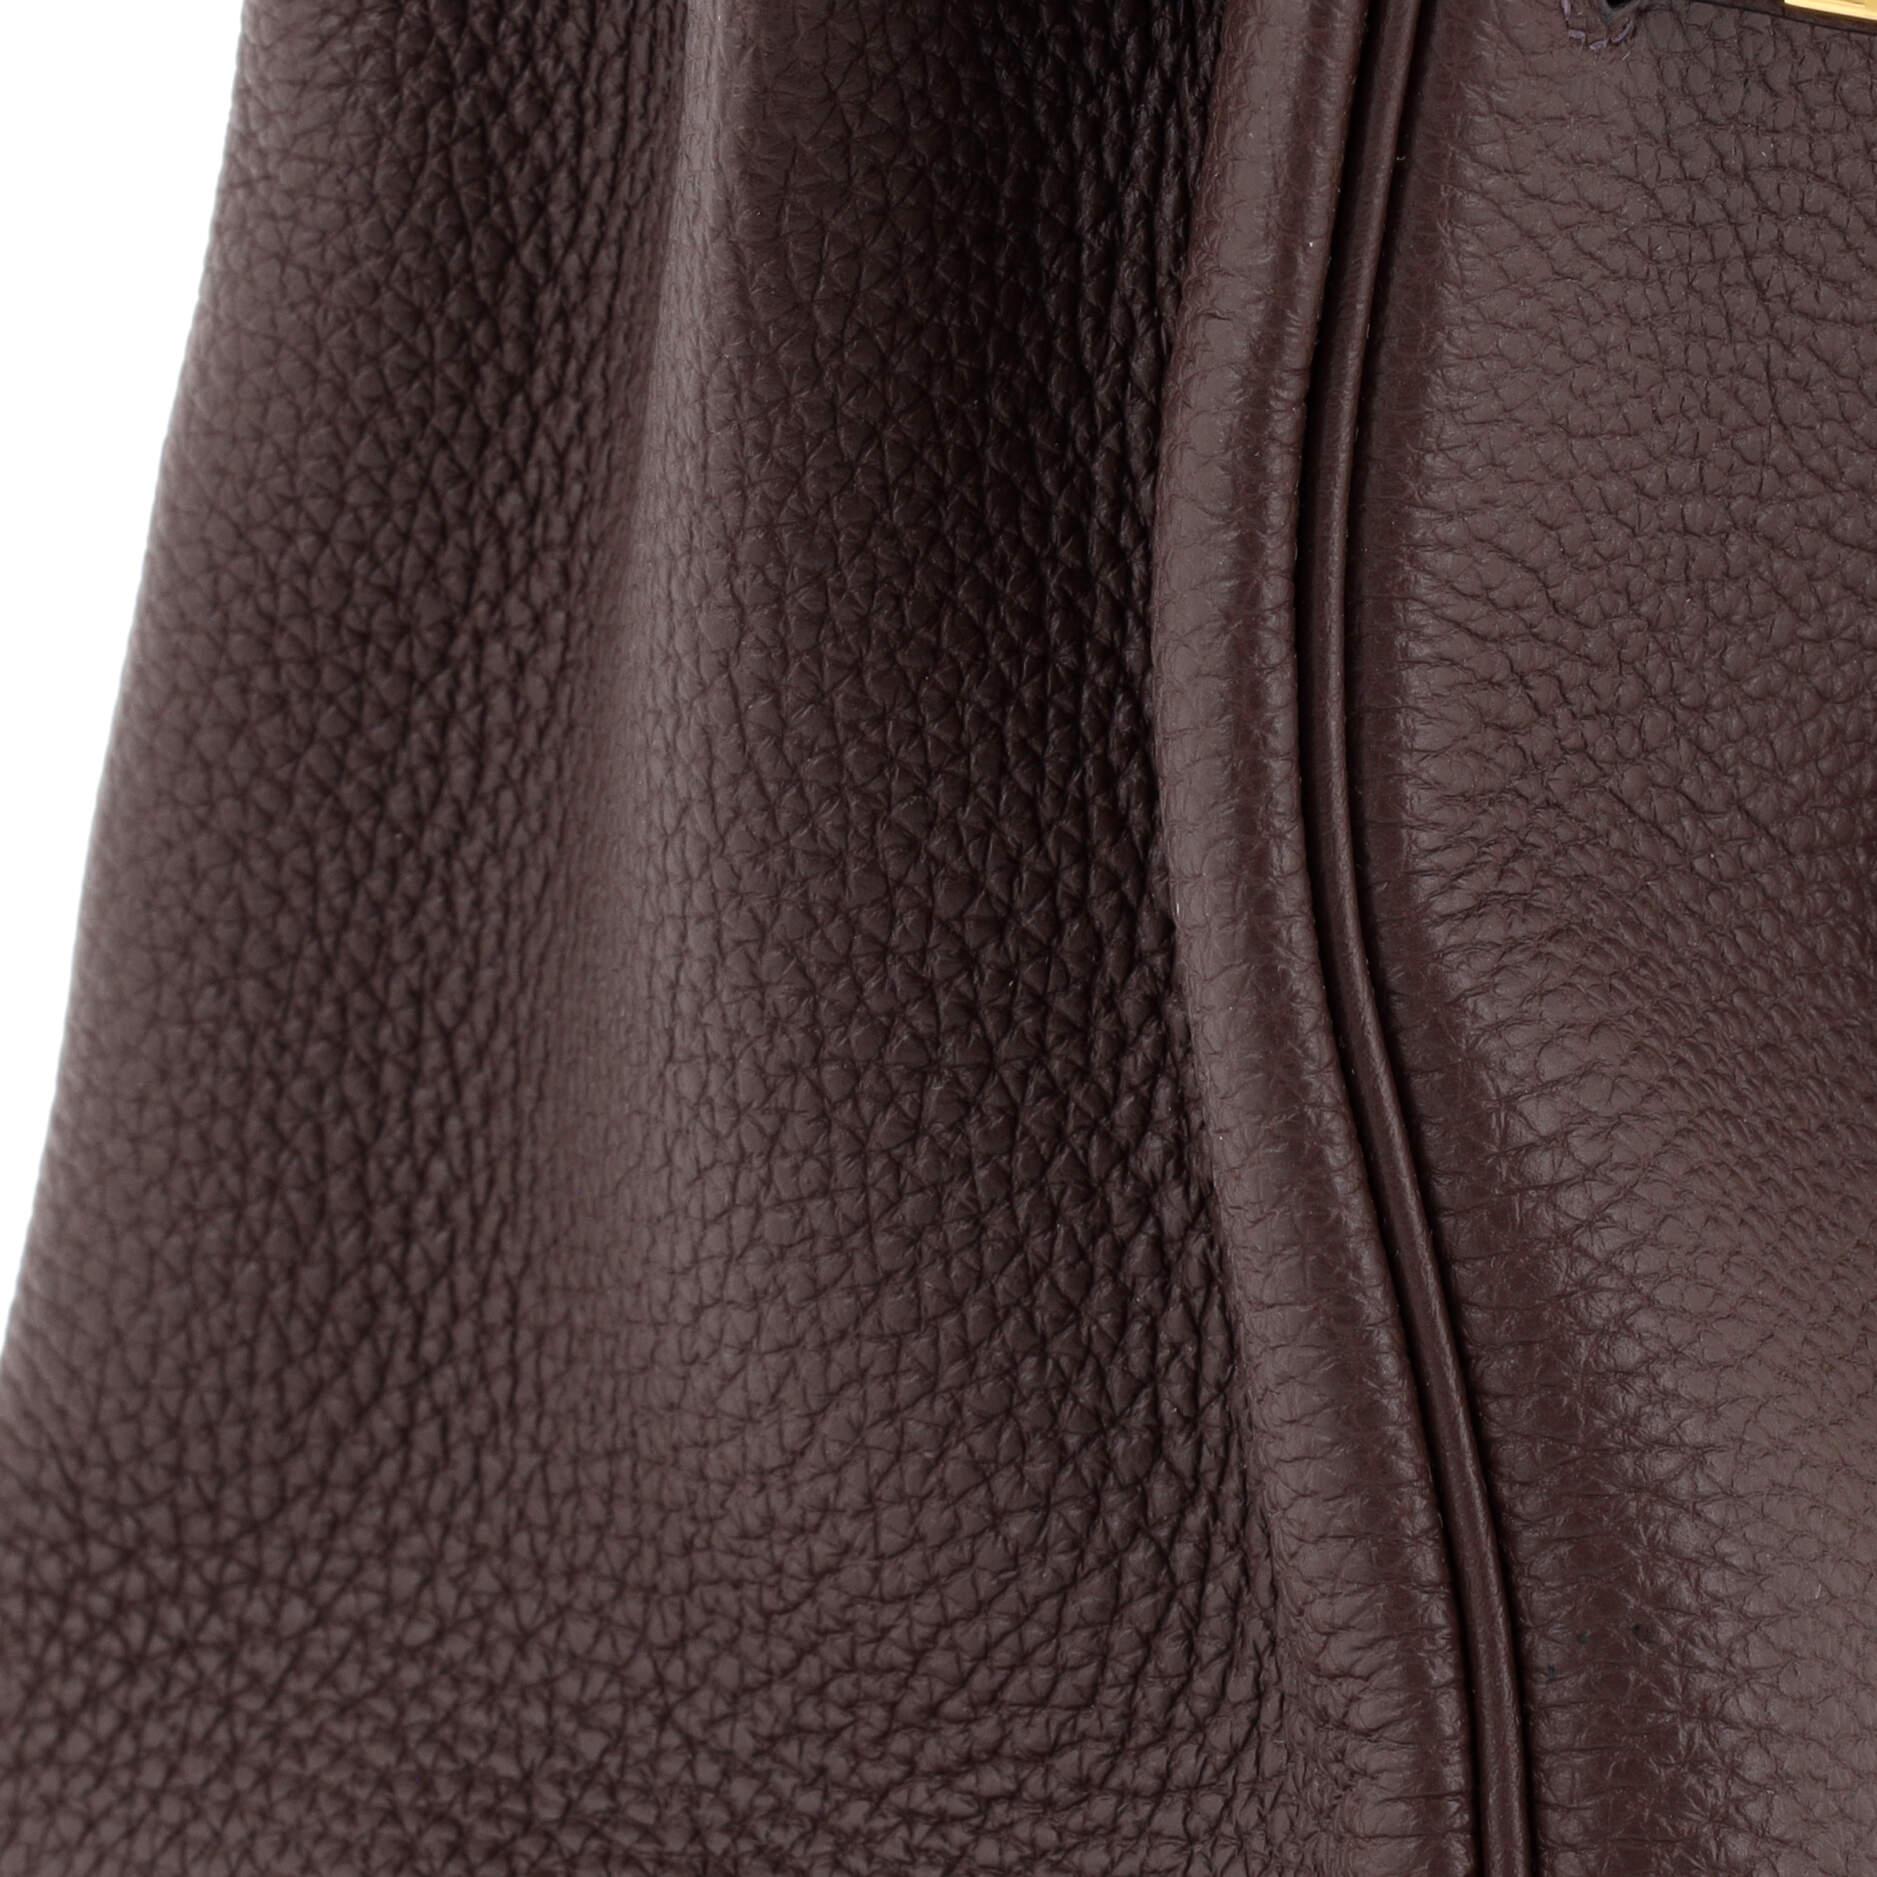 Hermes Birkin Handbag Rouge Sellier Togo with Gold Hardware 25 4